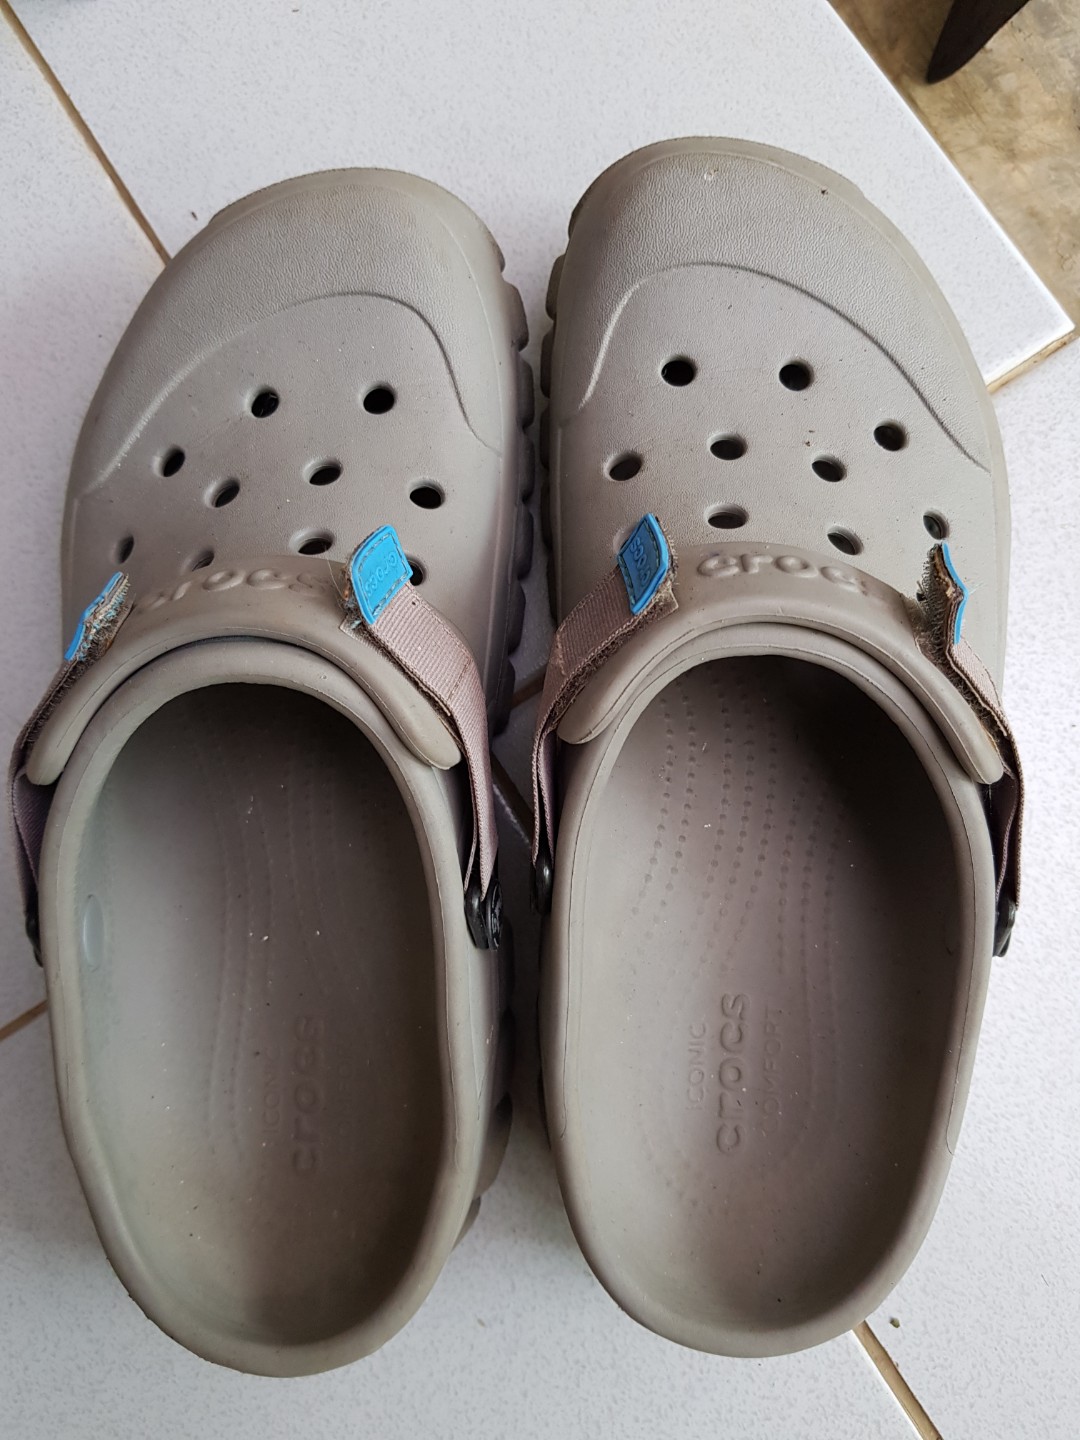 jual sandal crocs original